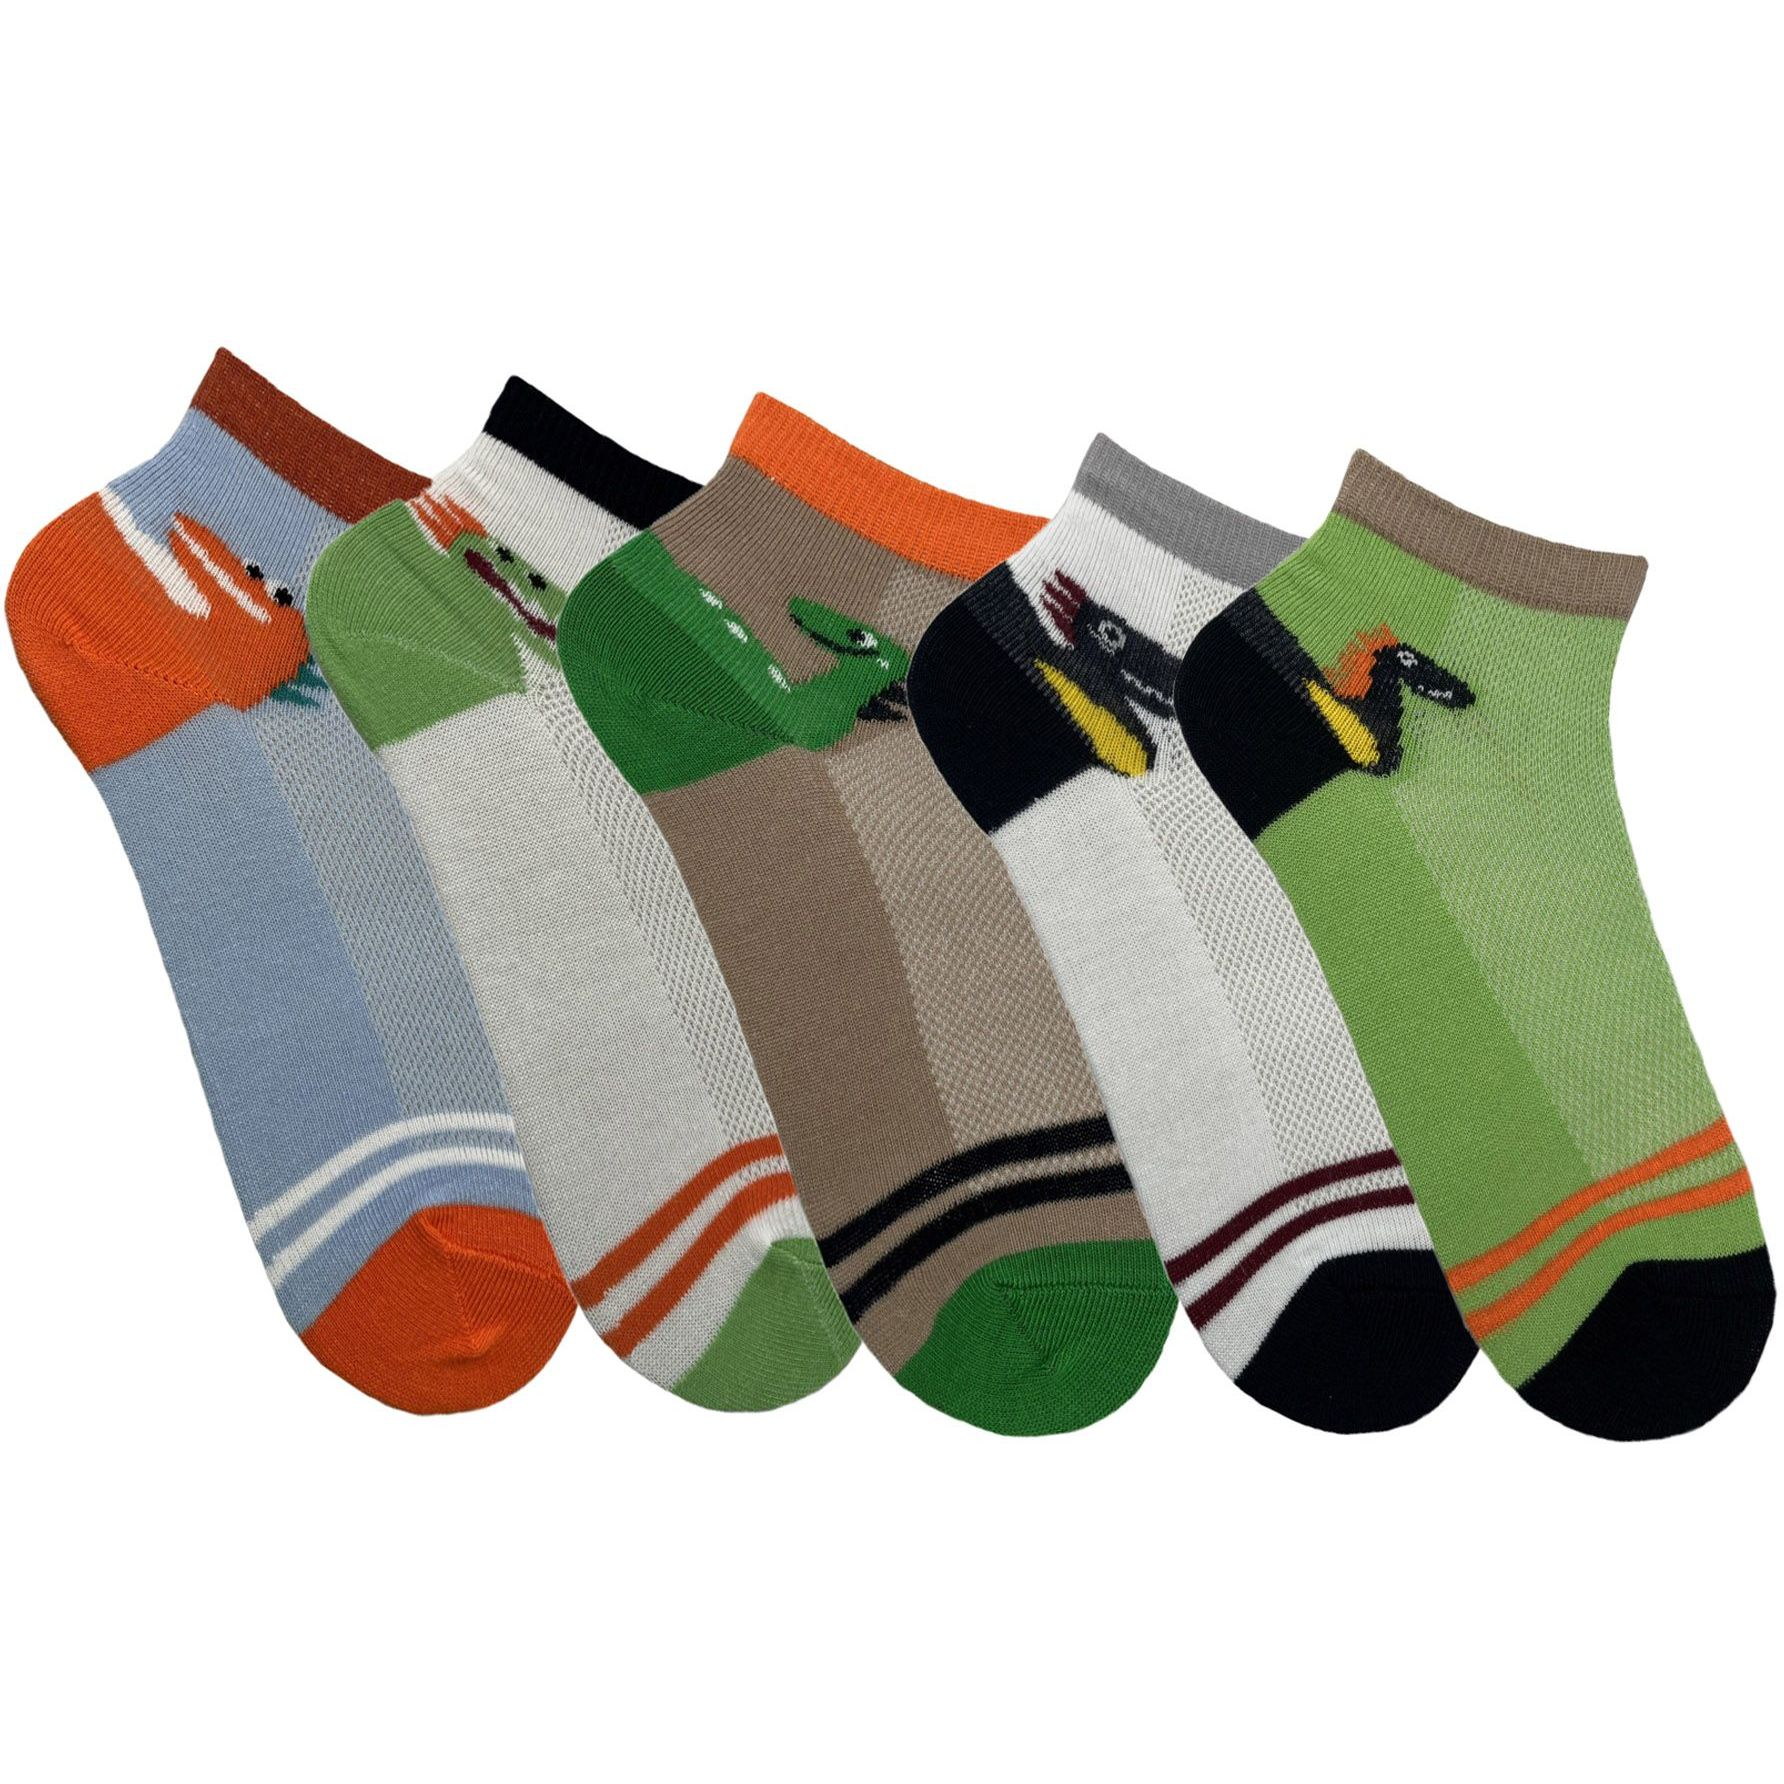 Набор носков для детей Premier Socks 16-18 5 пар разноцветные с принтом (4820163319445) фото 1